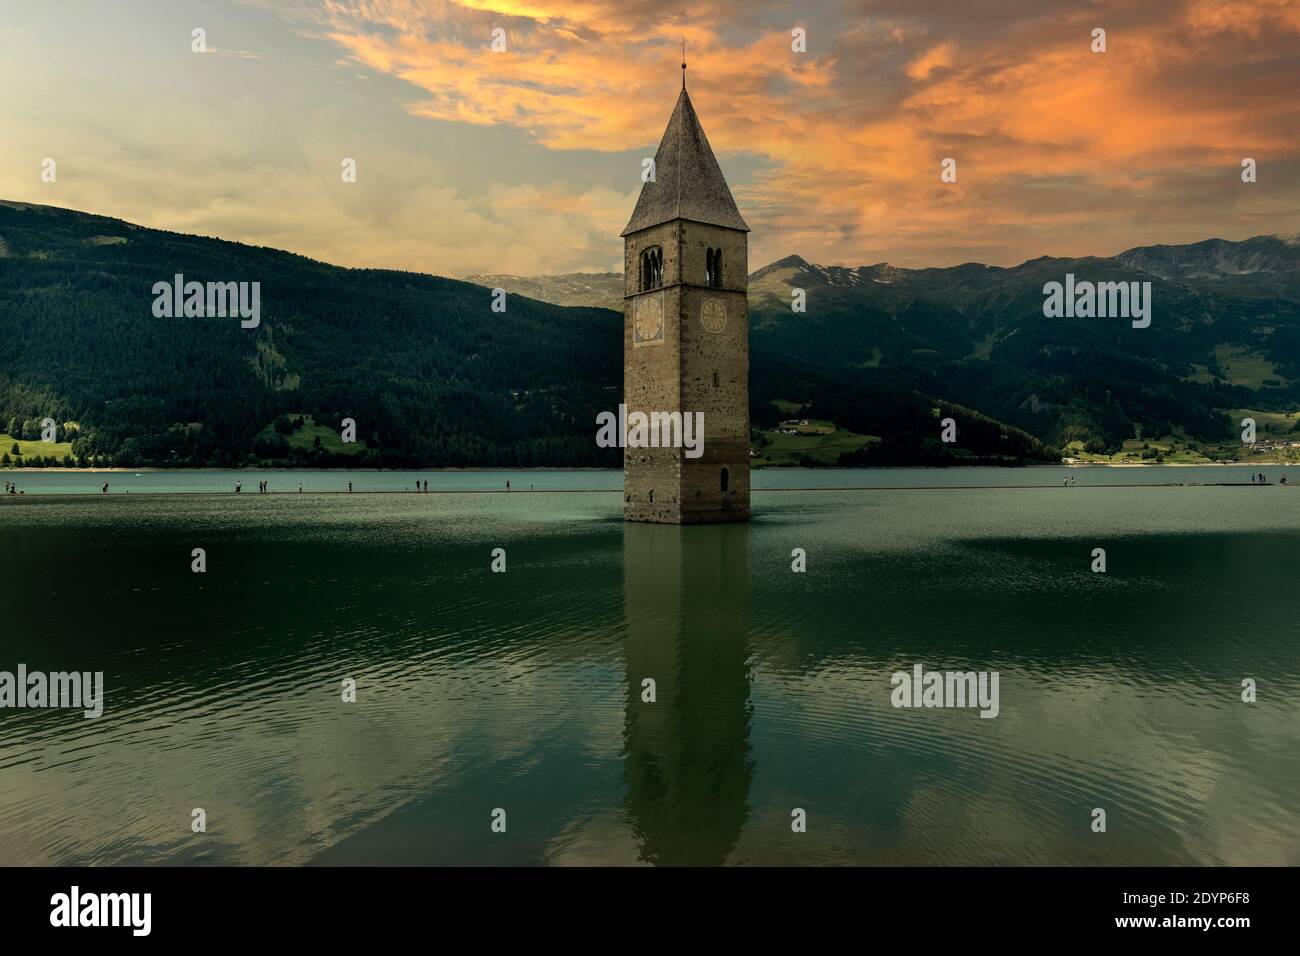 Campanile di Curon Venosta, o il campanile di Alt-Graun, Italia. Reschensee, orologio. Foto Stock